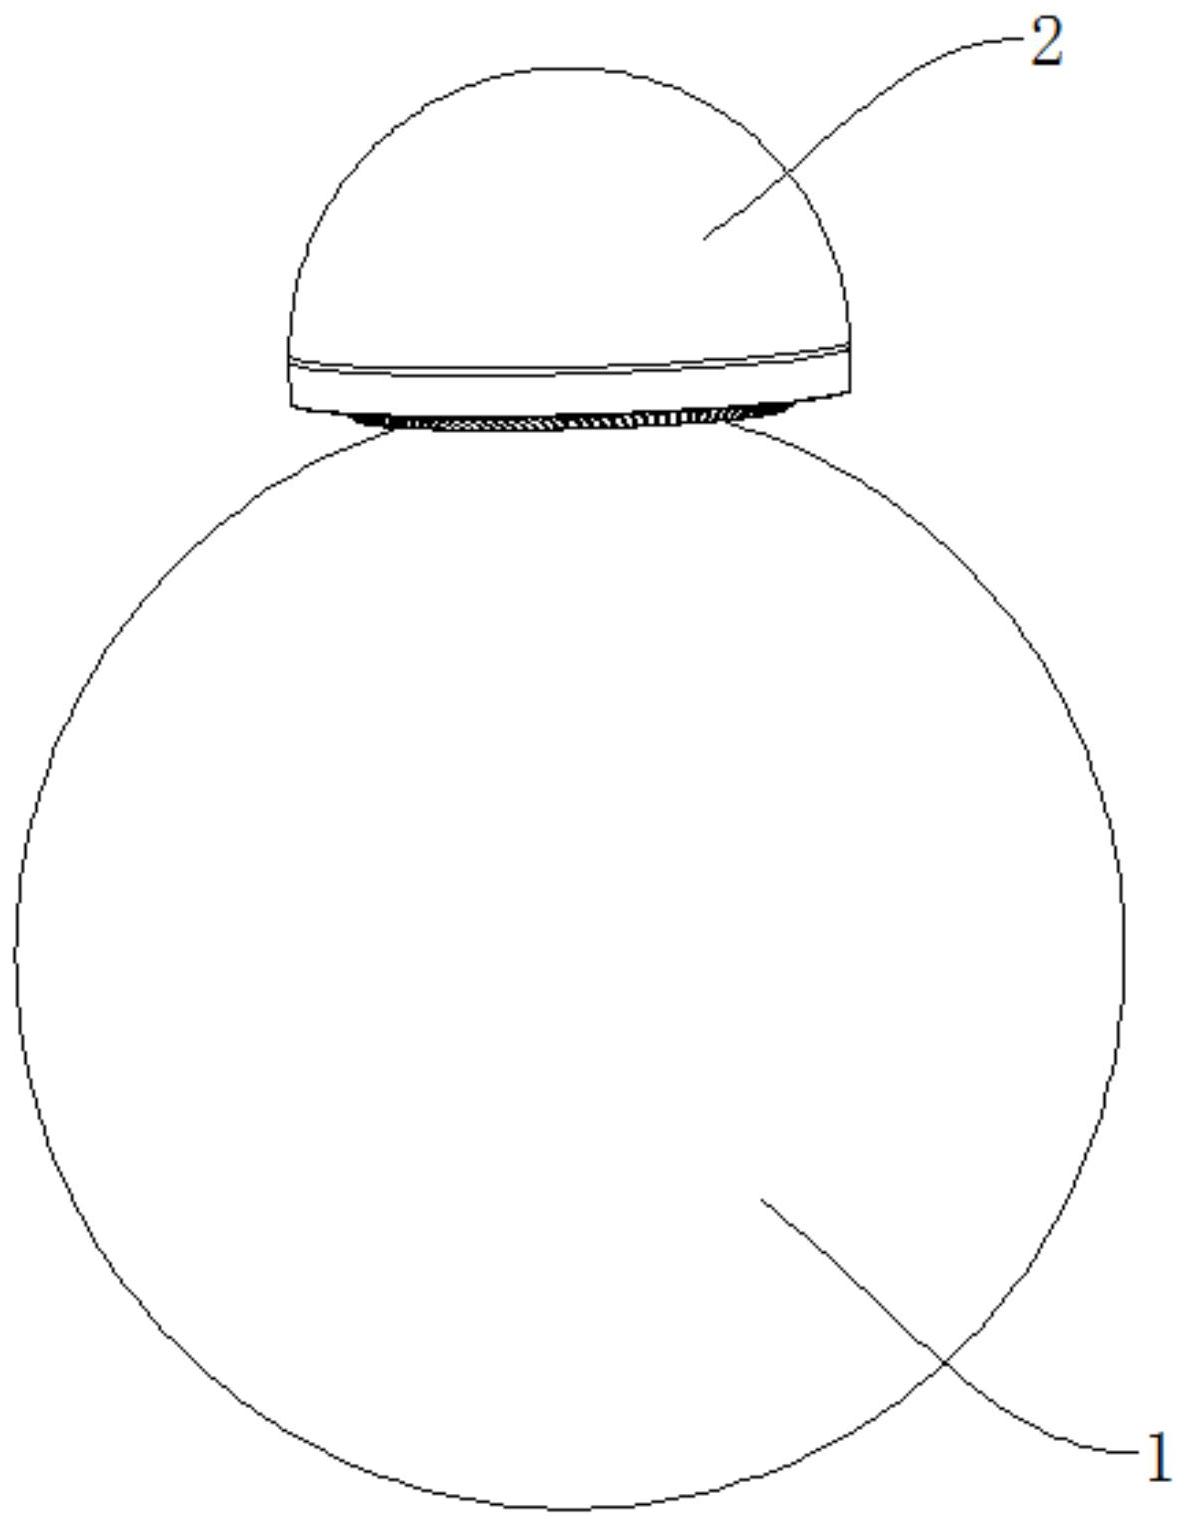 所述球形机器人包括头部和球体,所述球体包括球壳及位于所述球壳内的